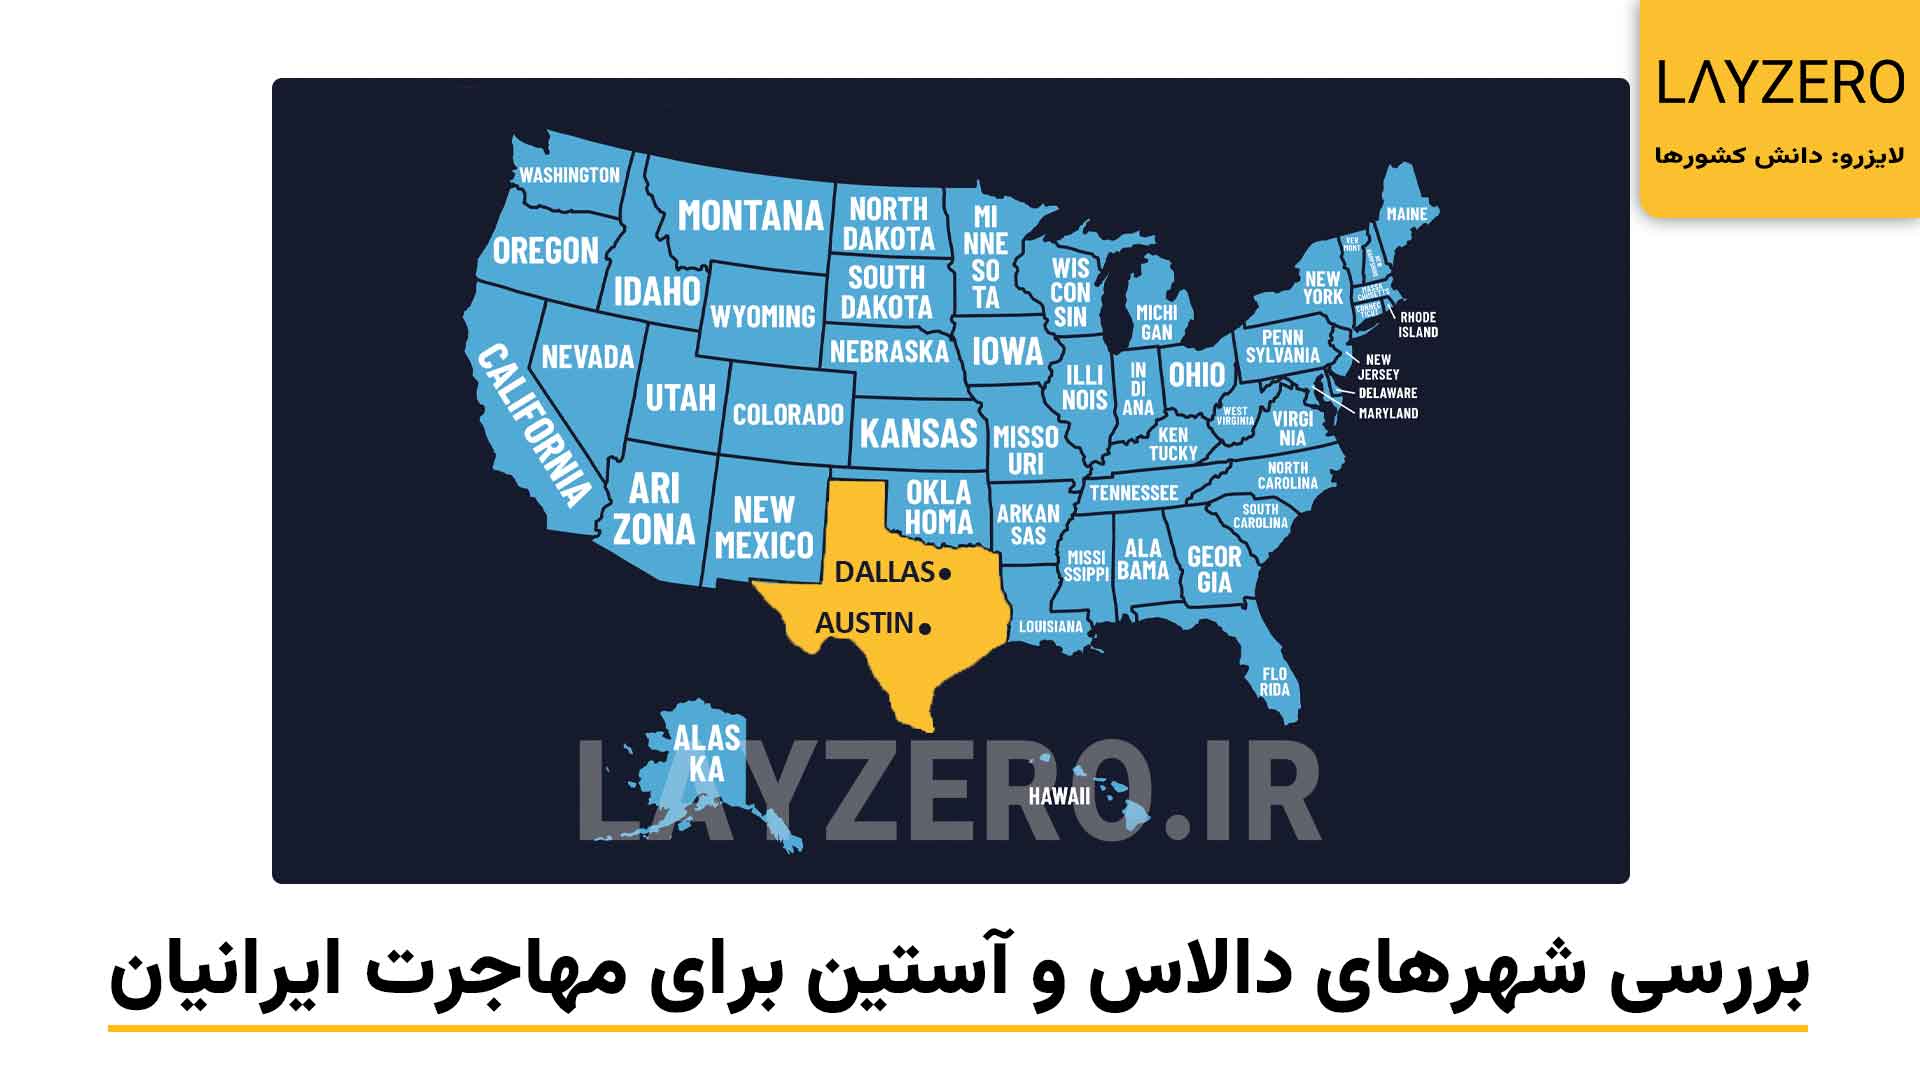 عکسی از موقعیت شهر دالاس و آستین بر روی نقشه آمریکا، بررسی شهرهای ایالت تگزاس برای مهاجرت ایرانیان